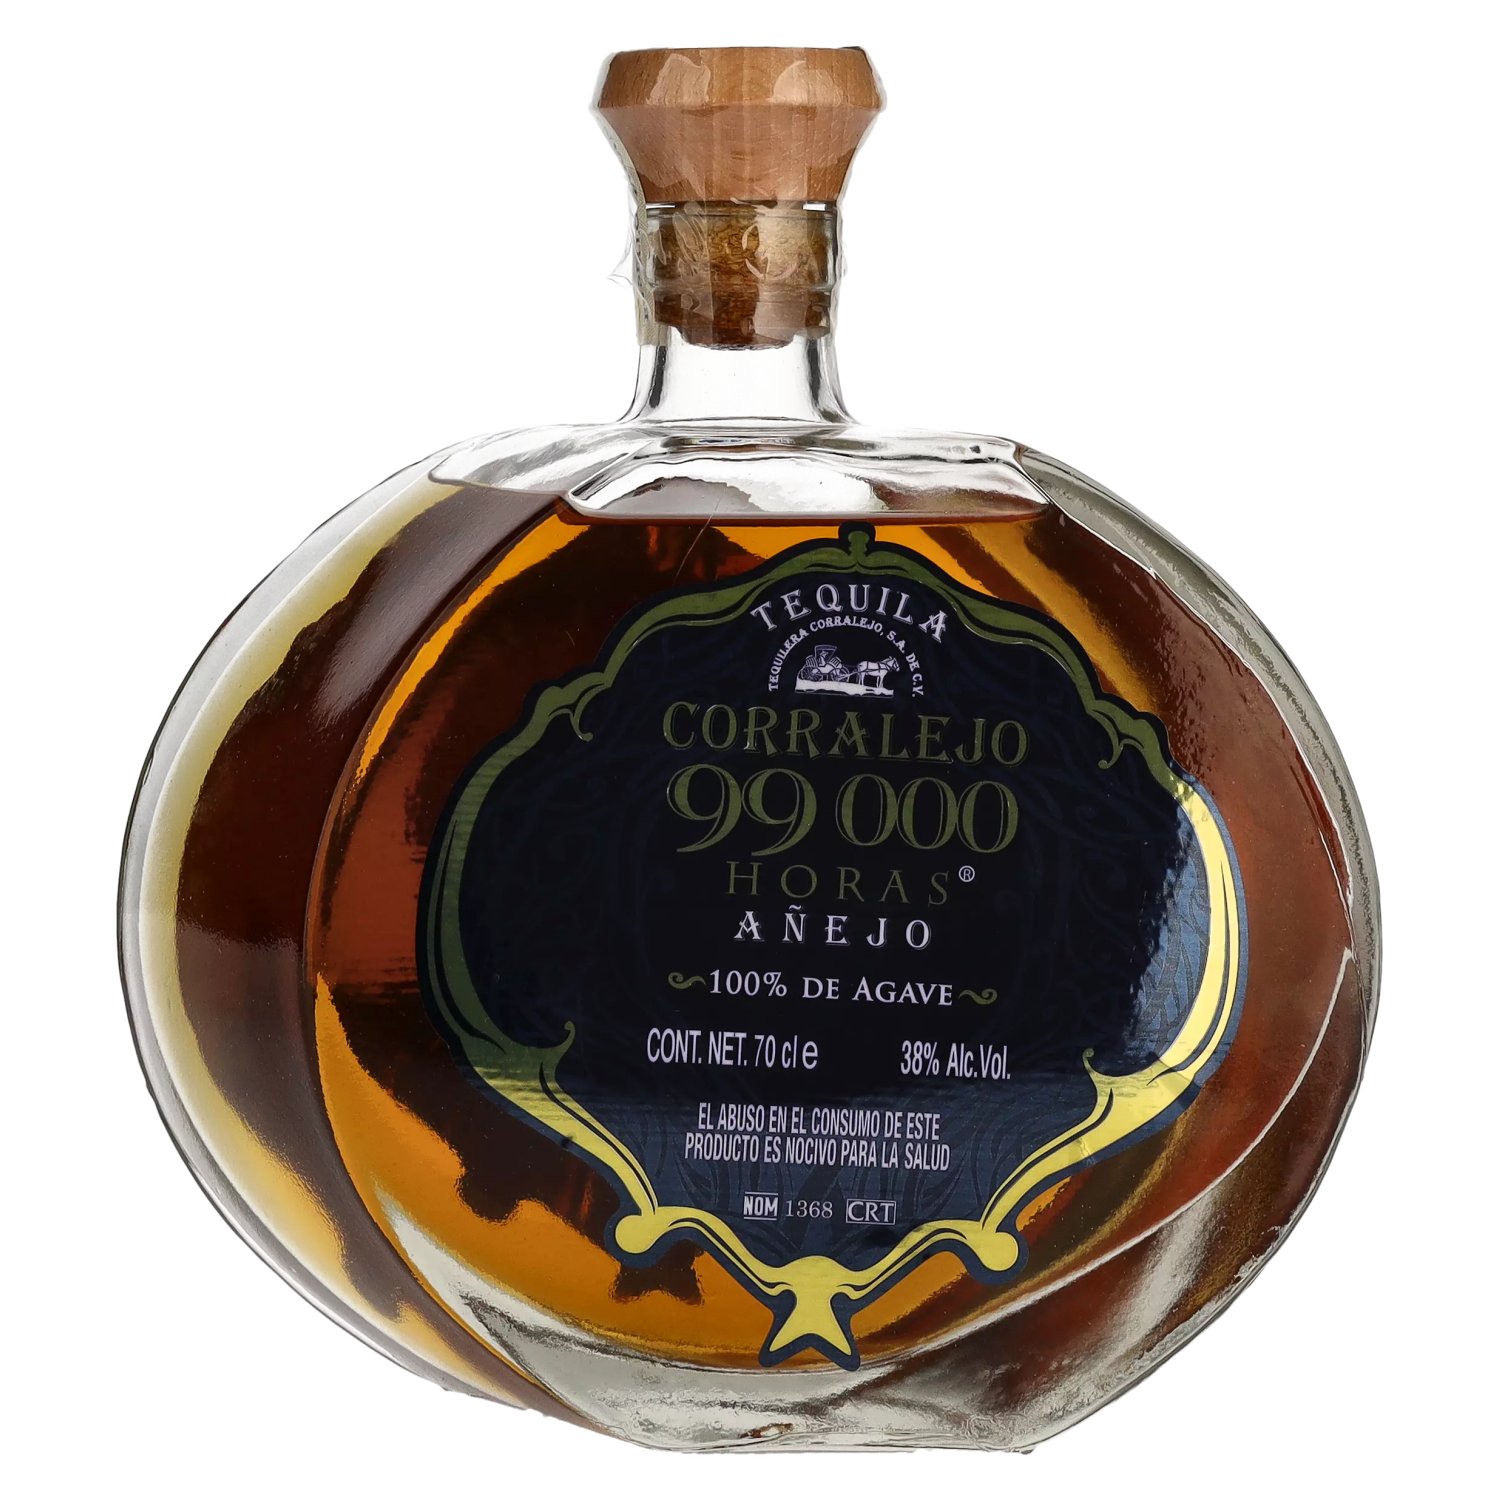 Vol. 99,000 0,7l HORAS Agave 100% 38% Corralejo AÑEJO de Tequila